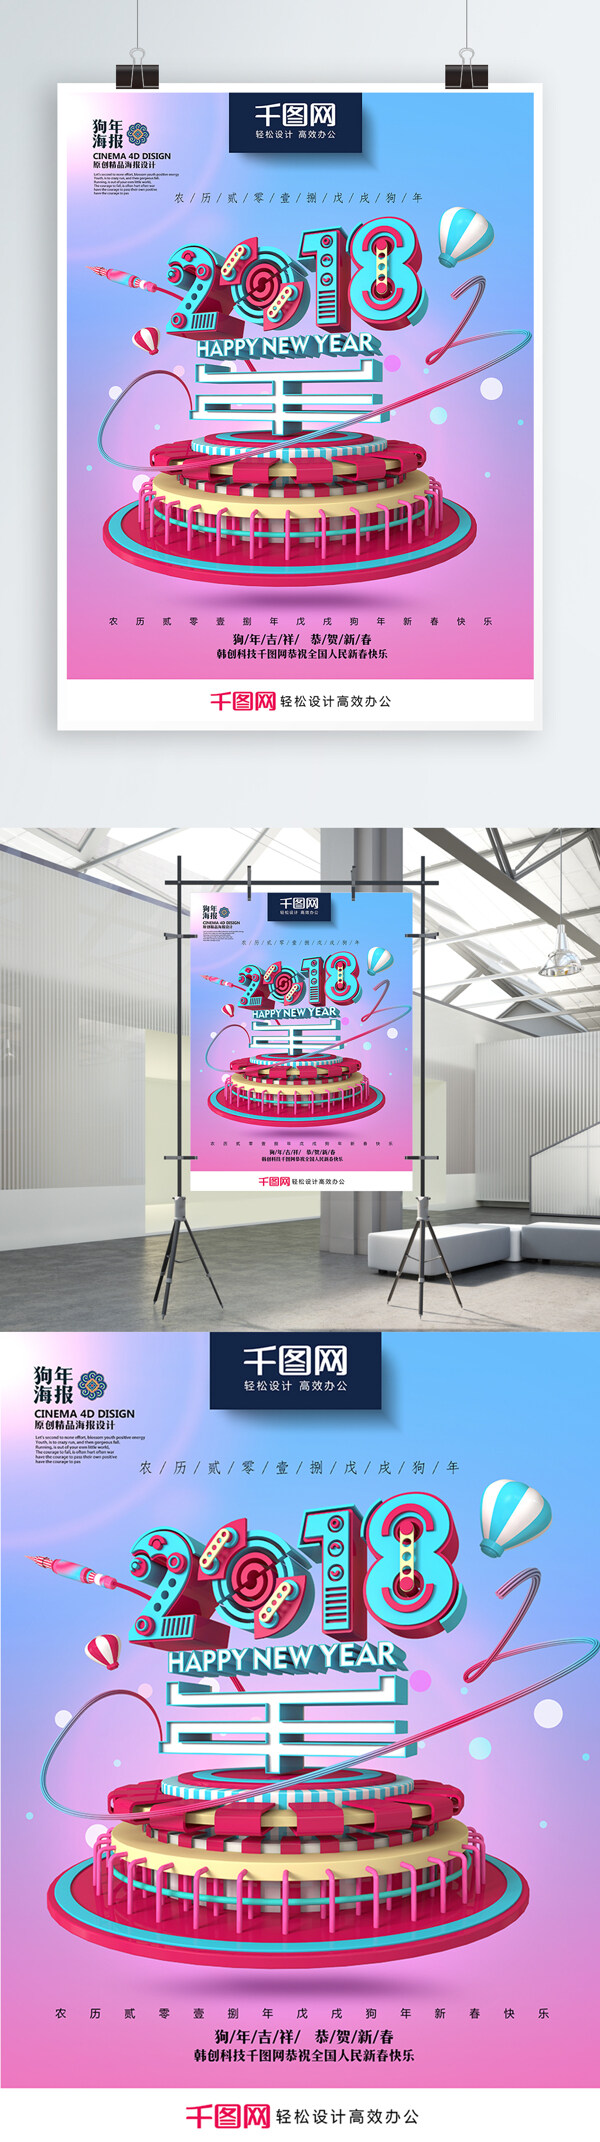 平面广告创意版式设计时尚清新创意2018狗年海报PSD模板